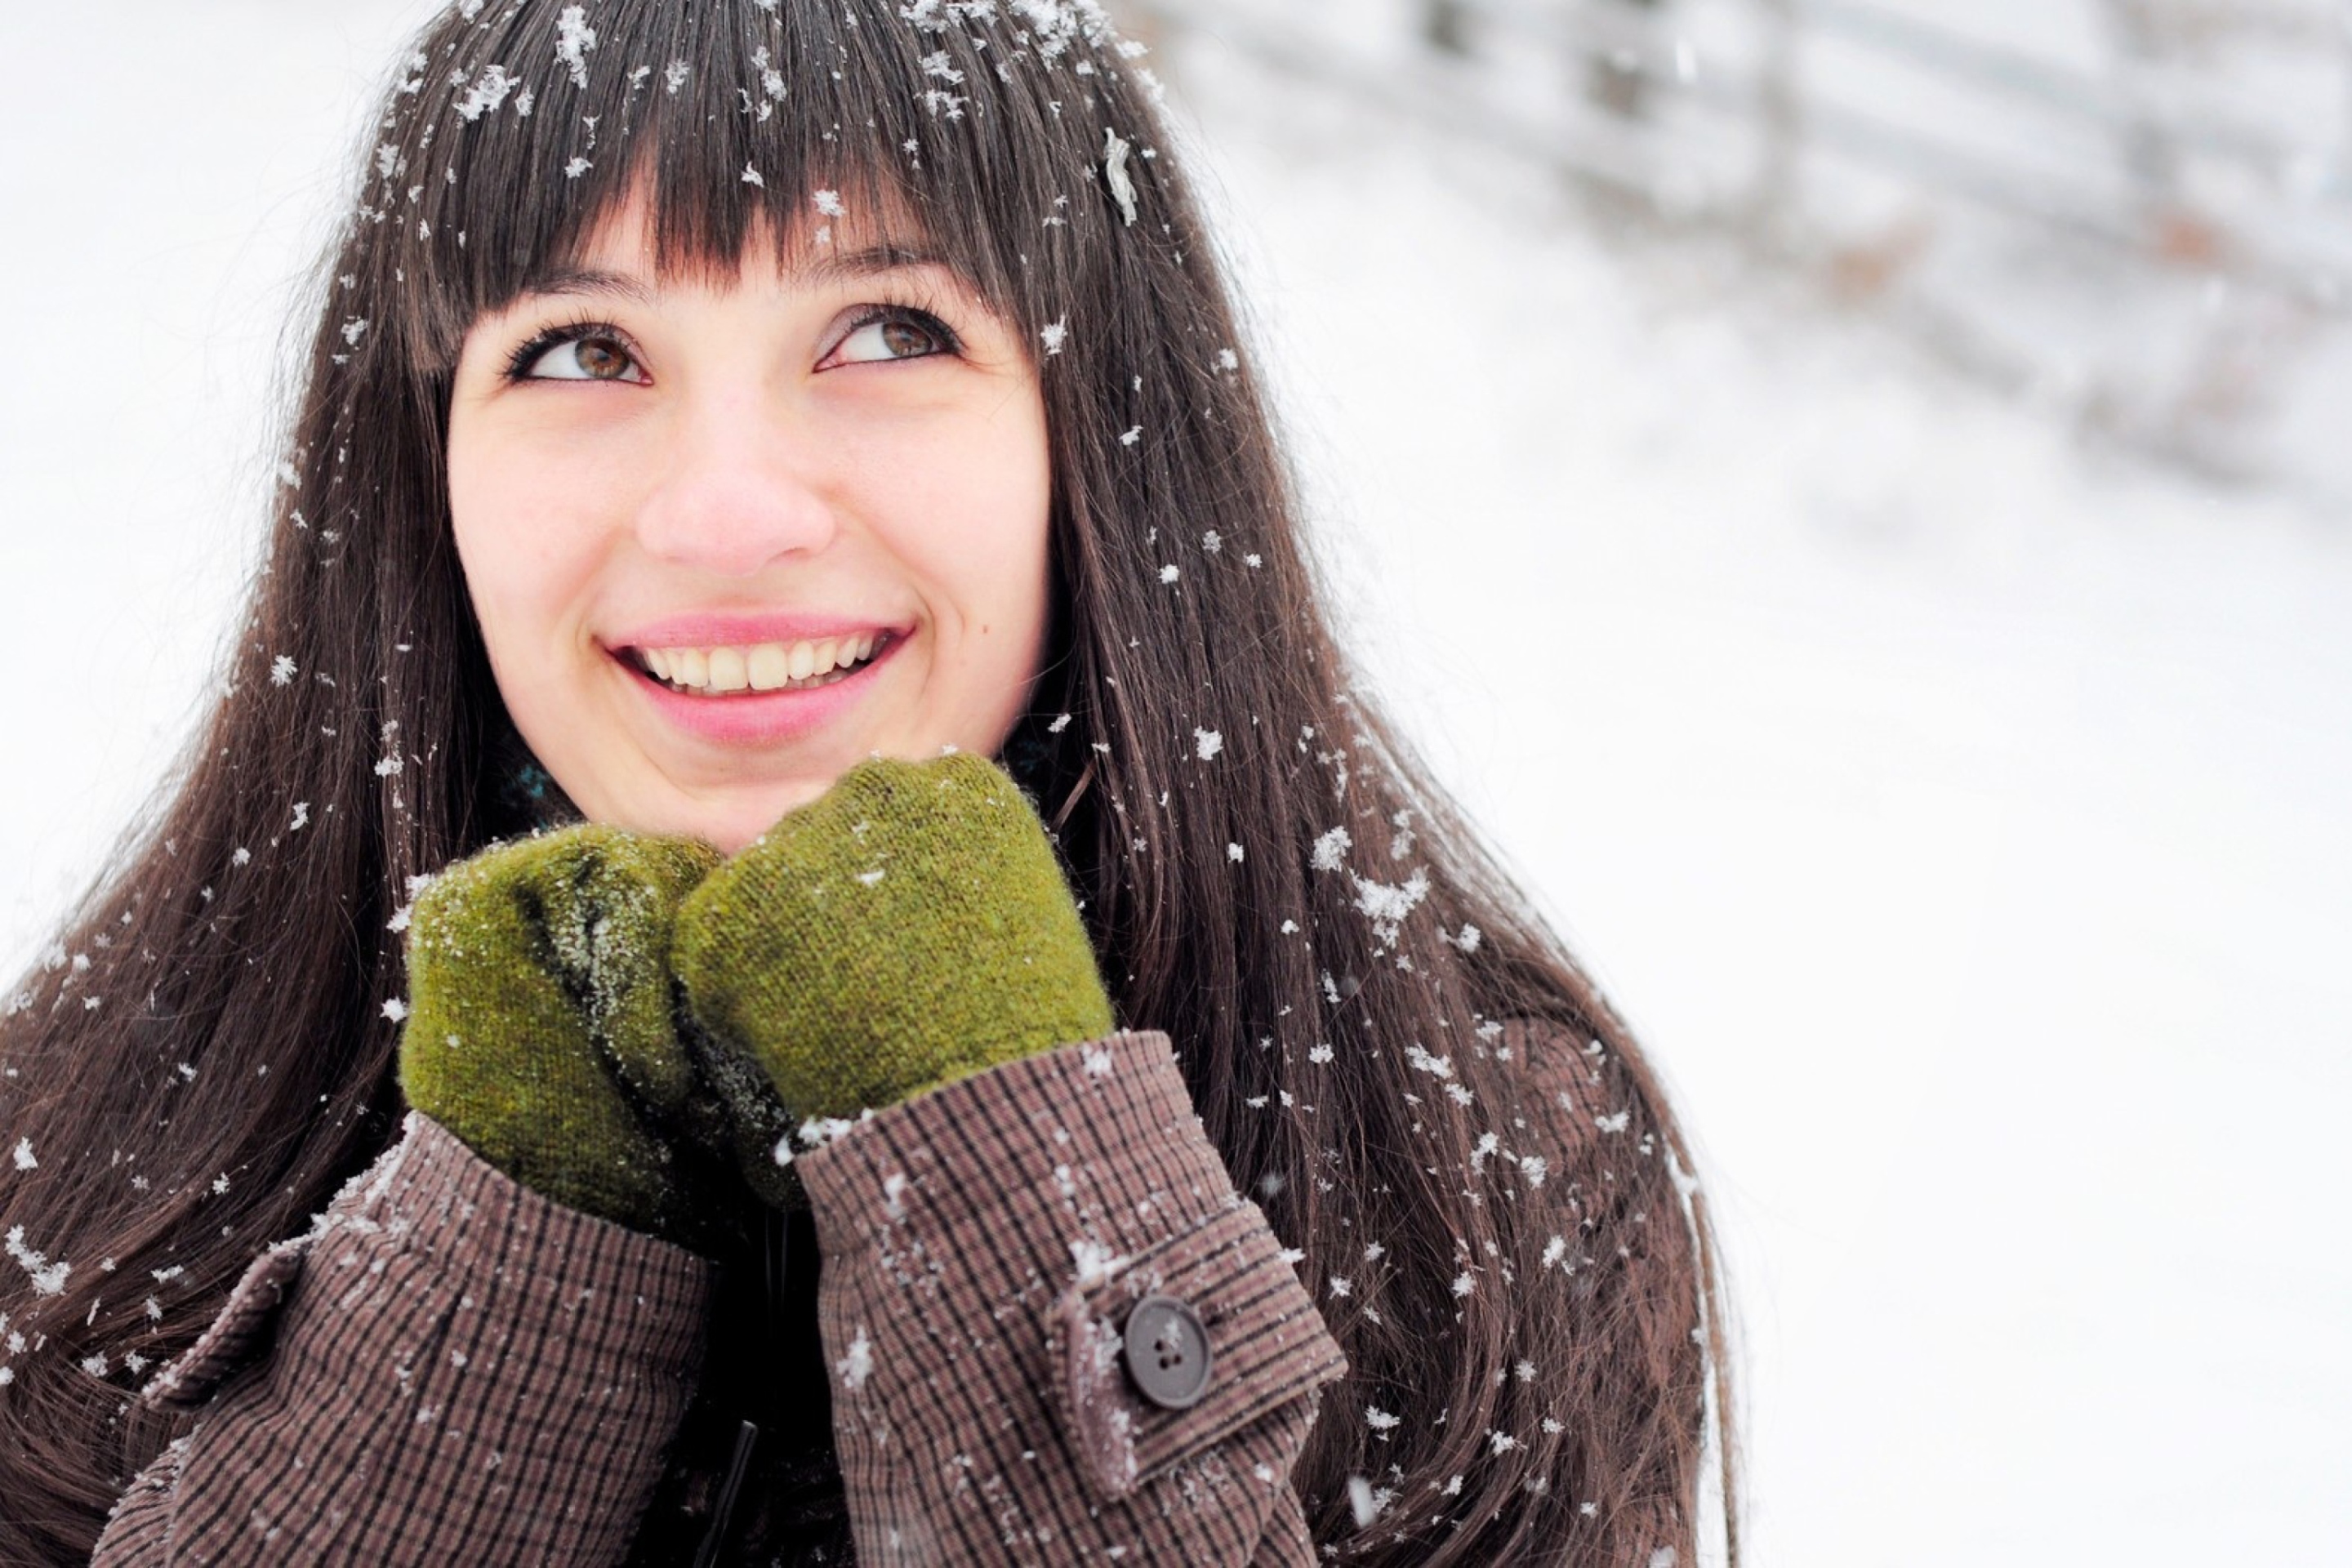 Das Brunette With Green Gloves In Snow Wallpaper 2880x1920